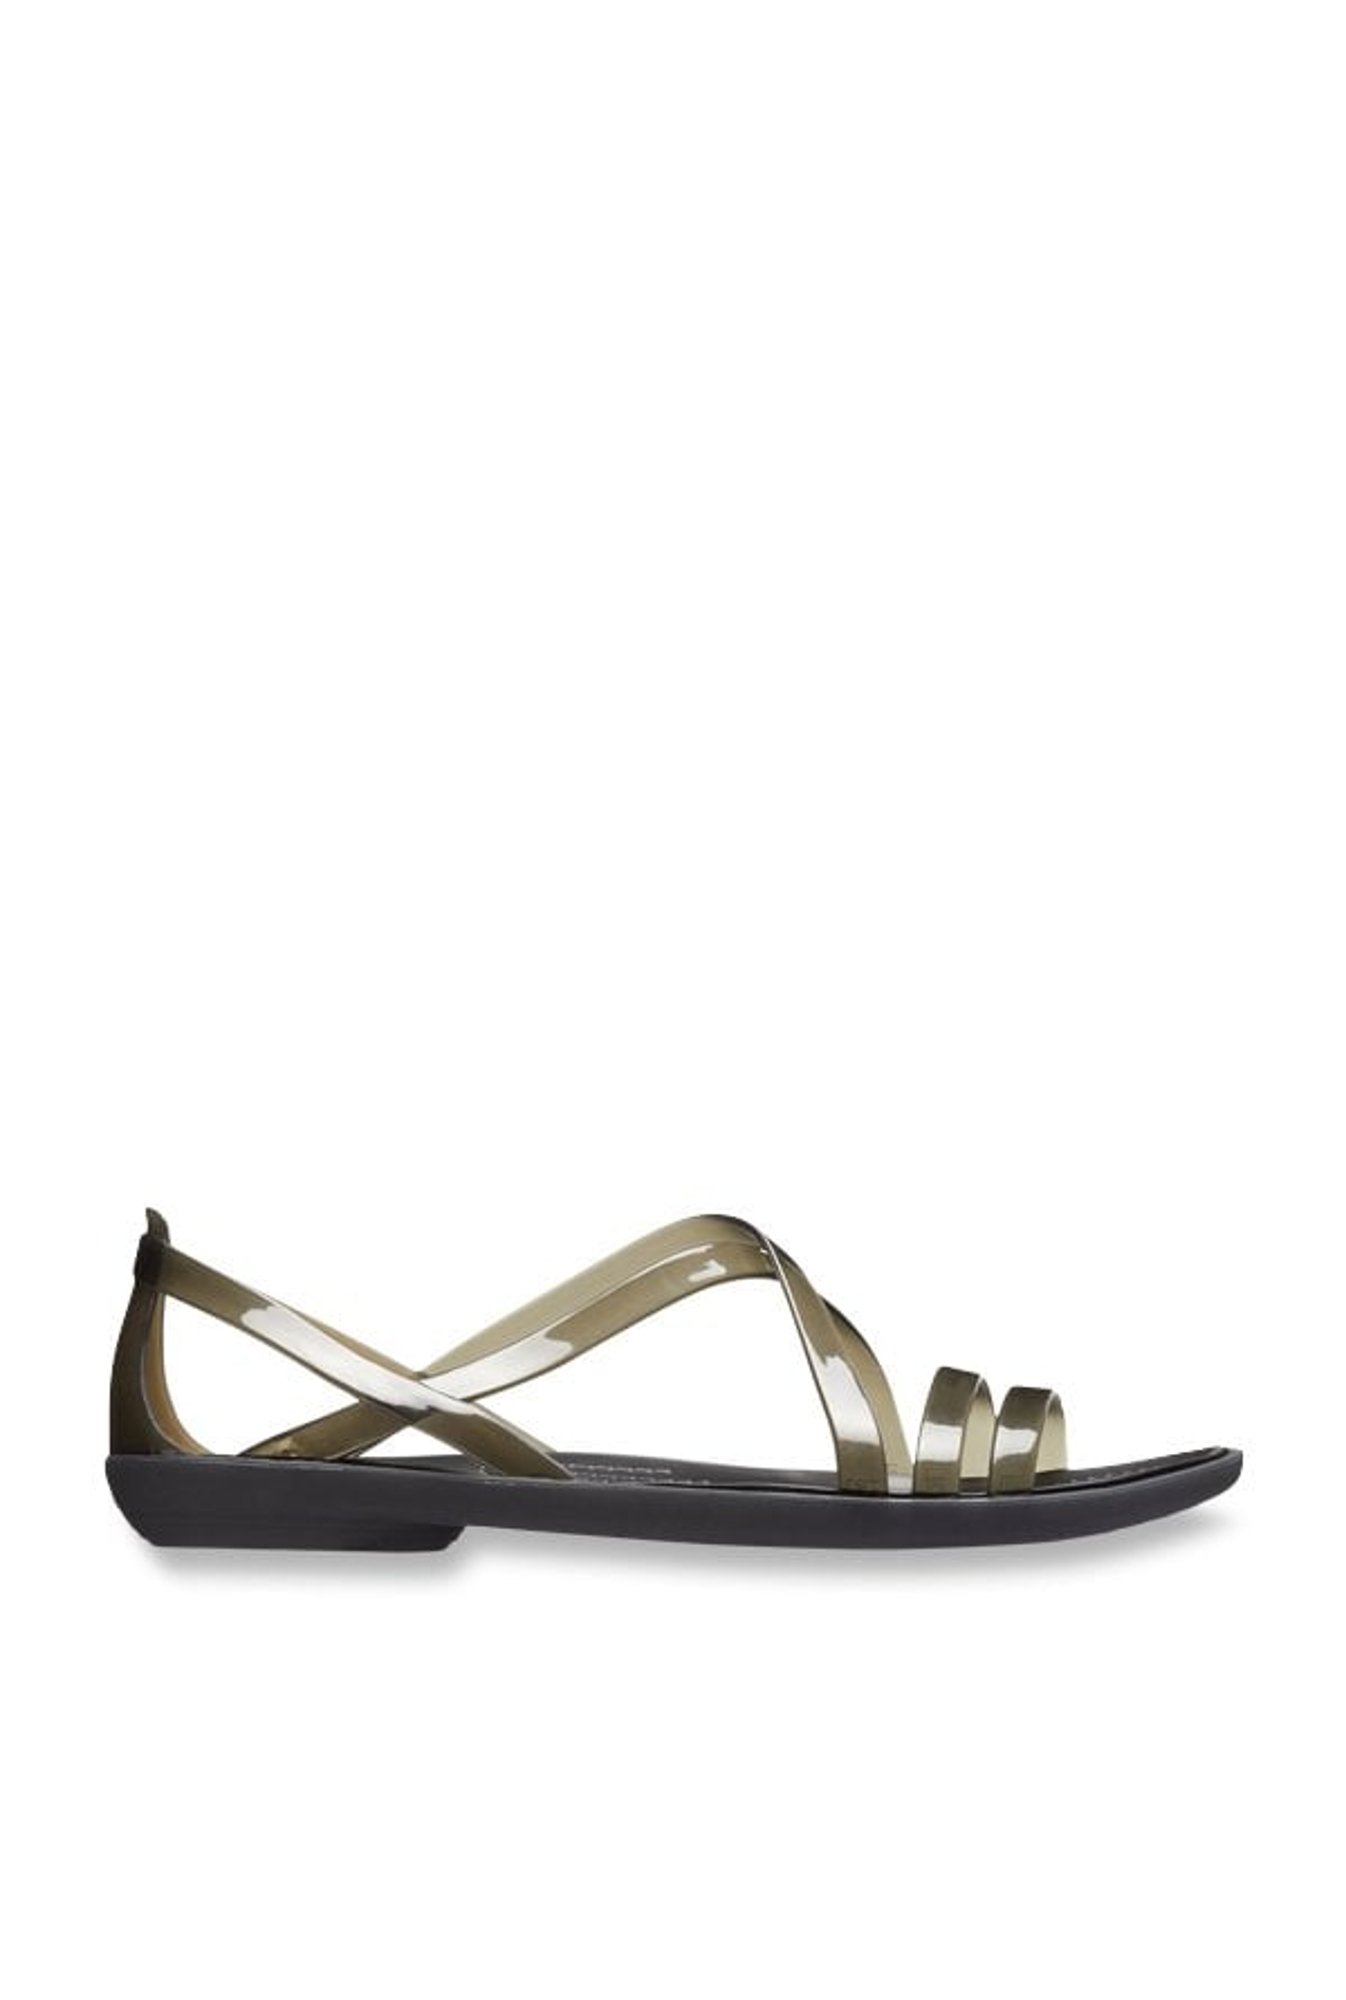 Crocs Isabella Huarache 2 Flat Sandals Black | Xtremeinn